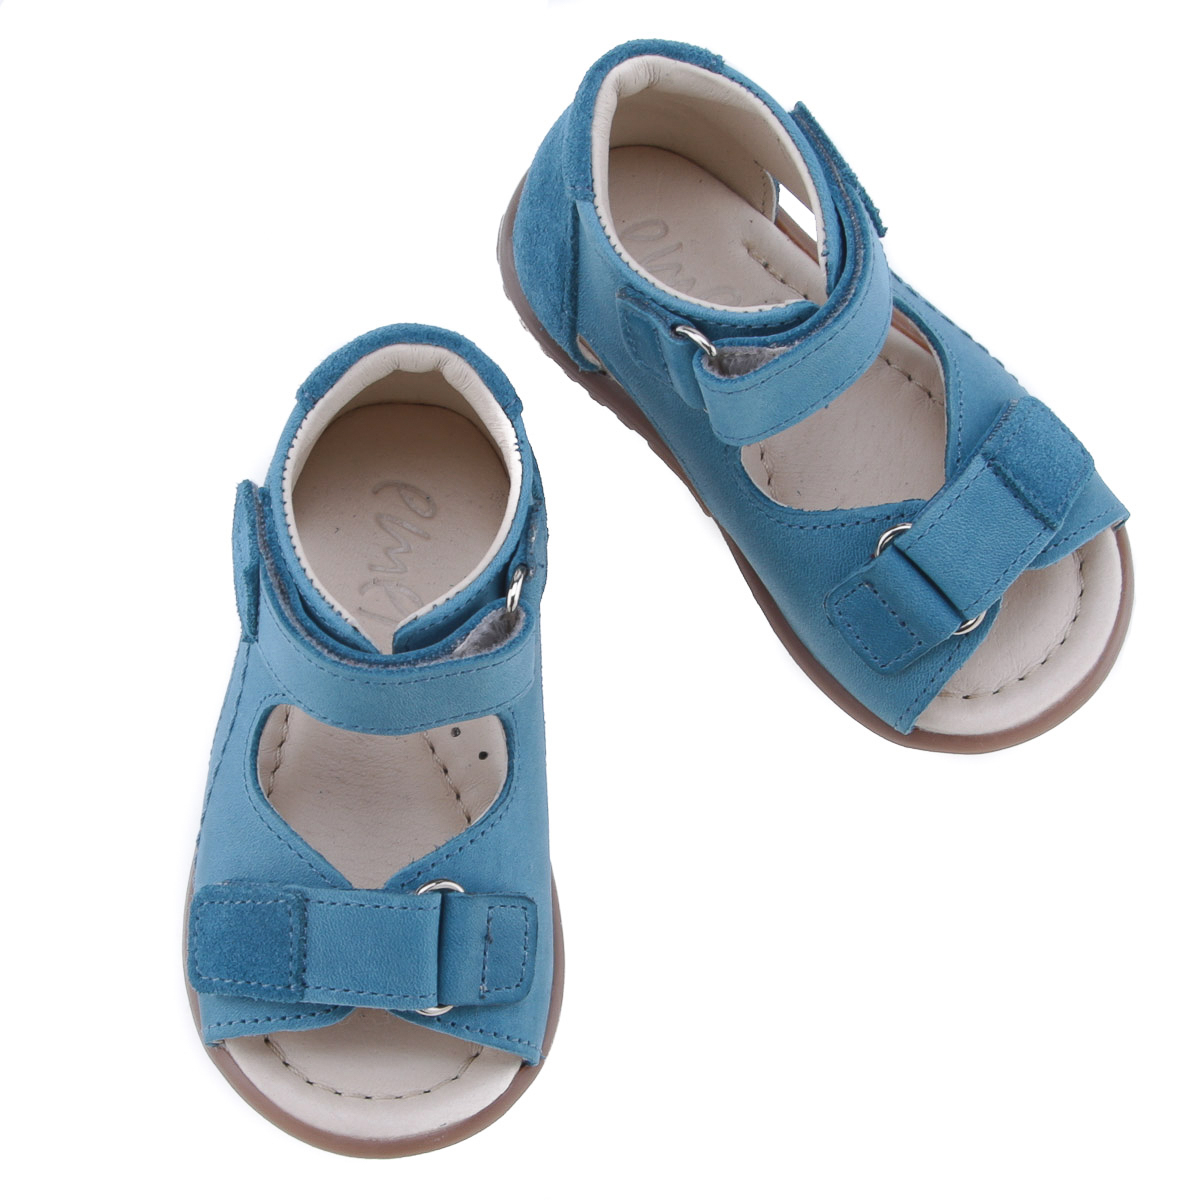 Malibu Roczki® niebieskie sandały dziecięce ze skóry naturalnej  - ES 2435-21 zdjęcie 1